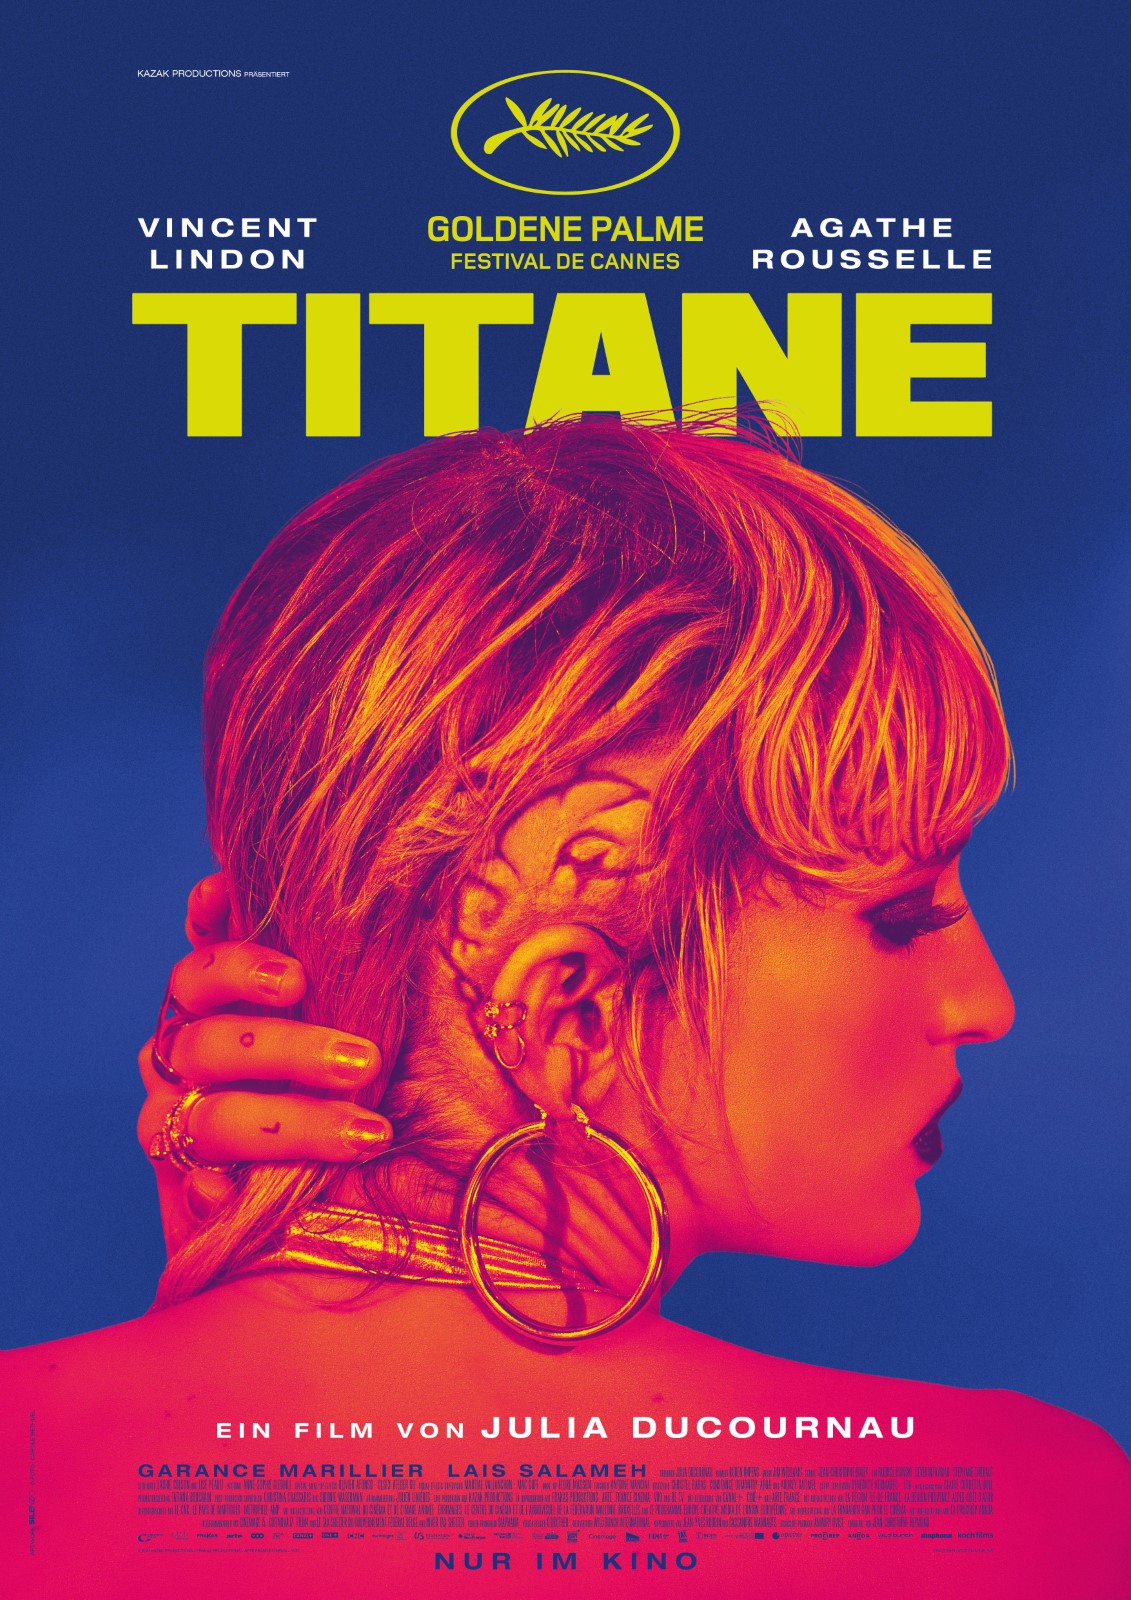 „Titane“ ist ein schriller Body-Horror Streifen mit absurden Elementen